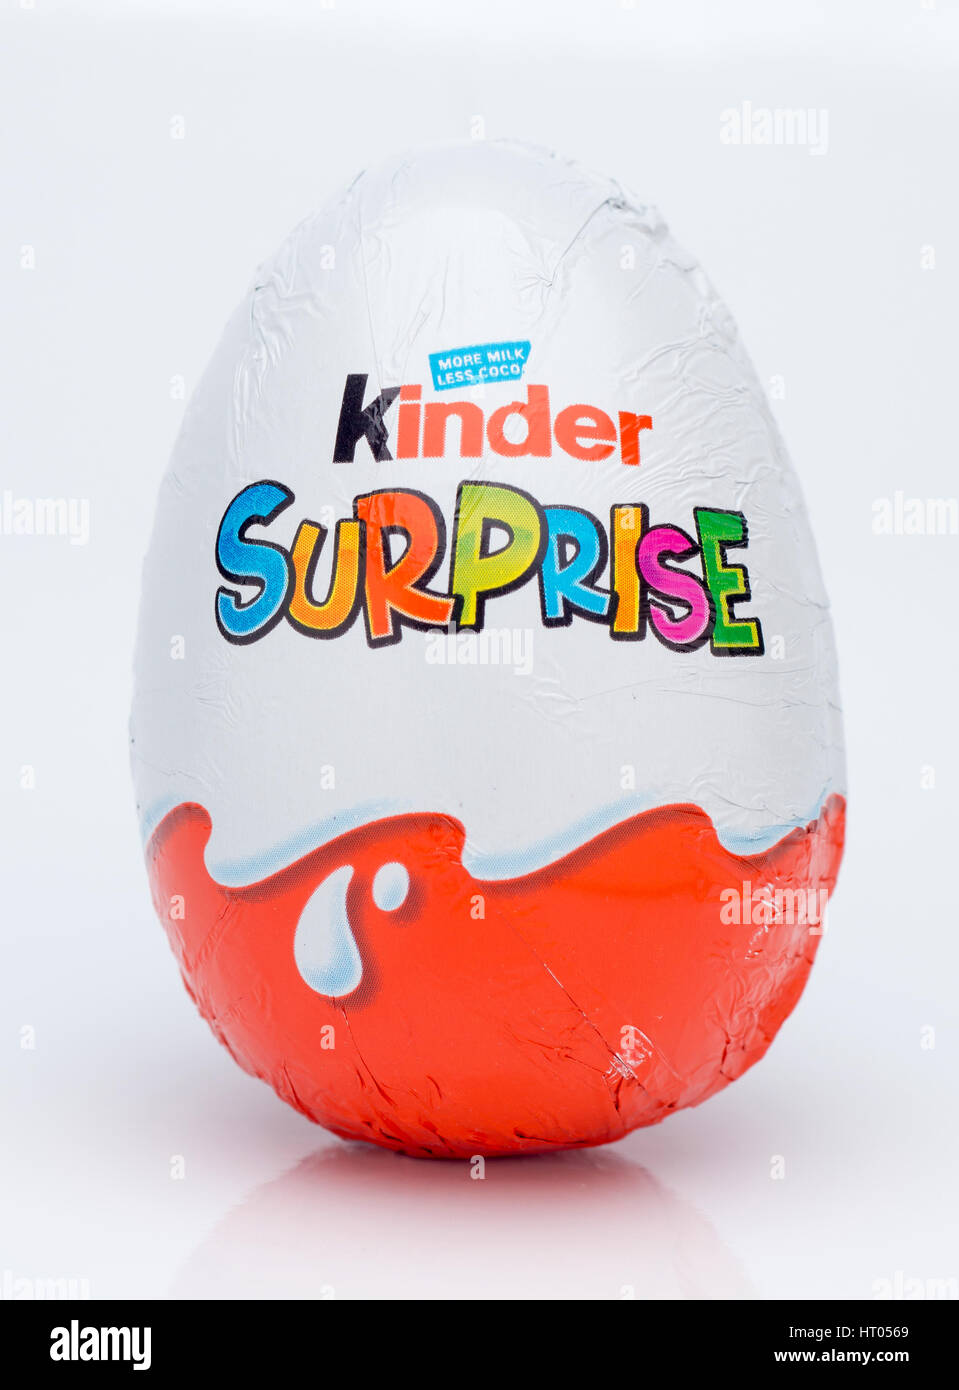 Kinder sorpresa o Kinder l'uovo è un uovo di cioccolato con un giocattolo interno, fabbricati dalla società italiana di Ferrero dal 1974. Foto Stock